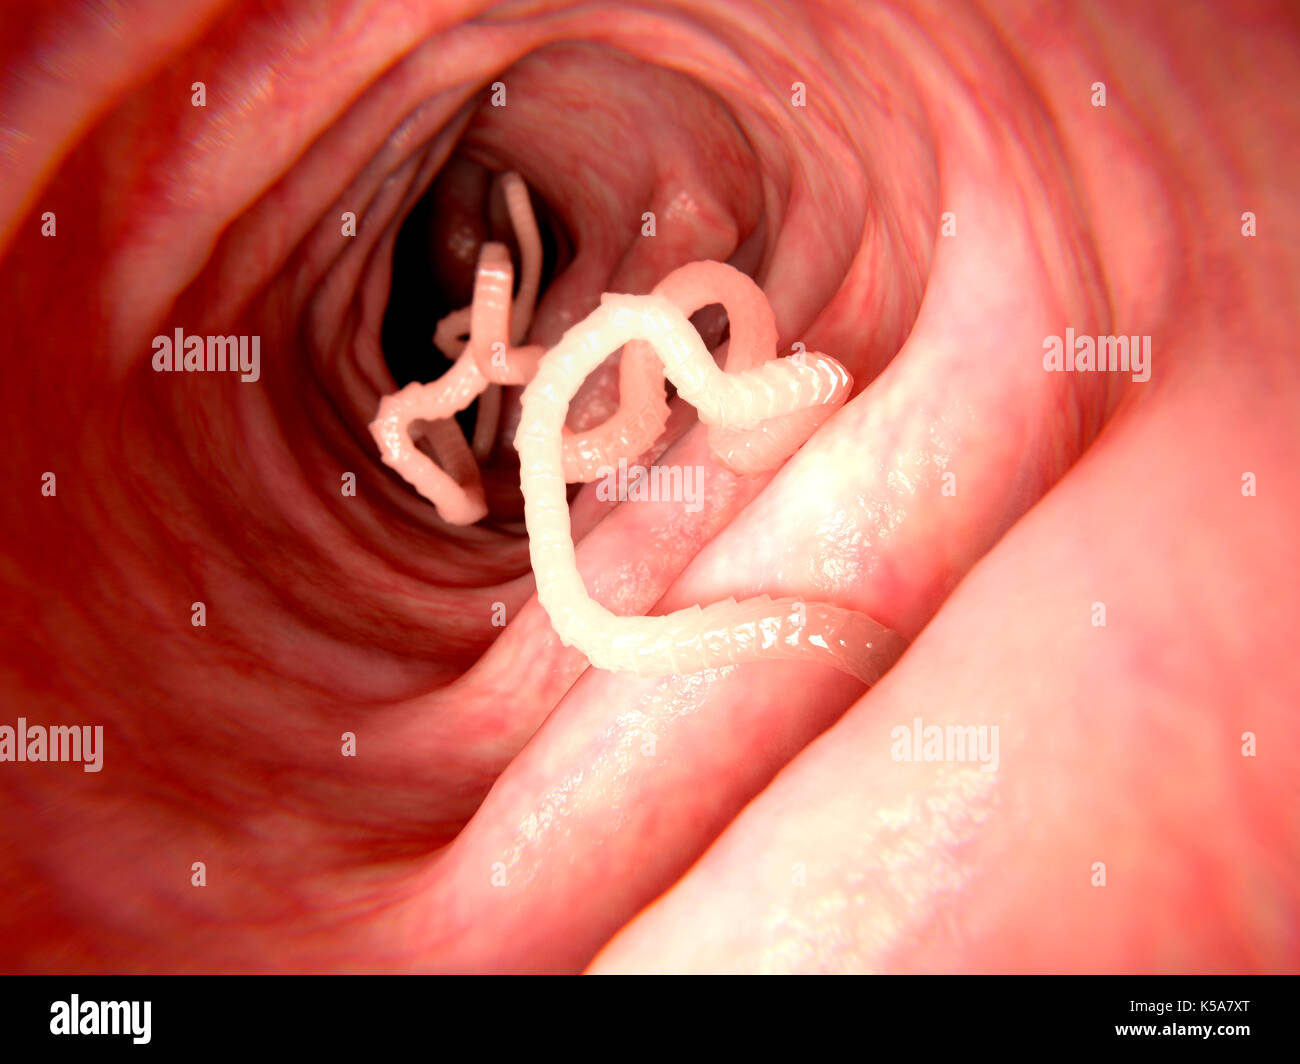 Illustrazione di un verme in un intestino umano. Le tenie (Taenia sp.) sono parassiti che abitano l'intestino umano. Si ancorano all'interno dell'intestino e di assorbire le sostanze nutritive attraverso la loro parete corpo. Le tenie possono crescere a diversi metri di lunghezza, ma infestazione non necessariamente causa sintomi. Foto Stock